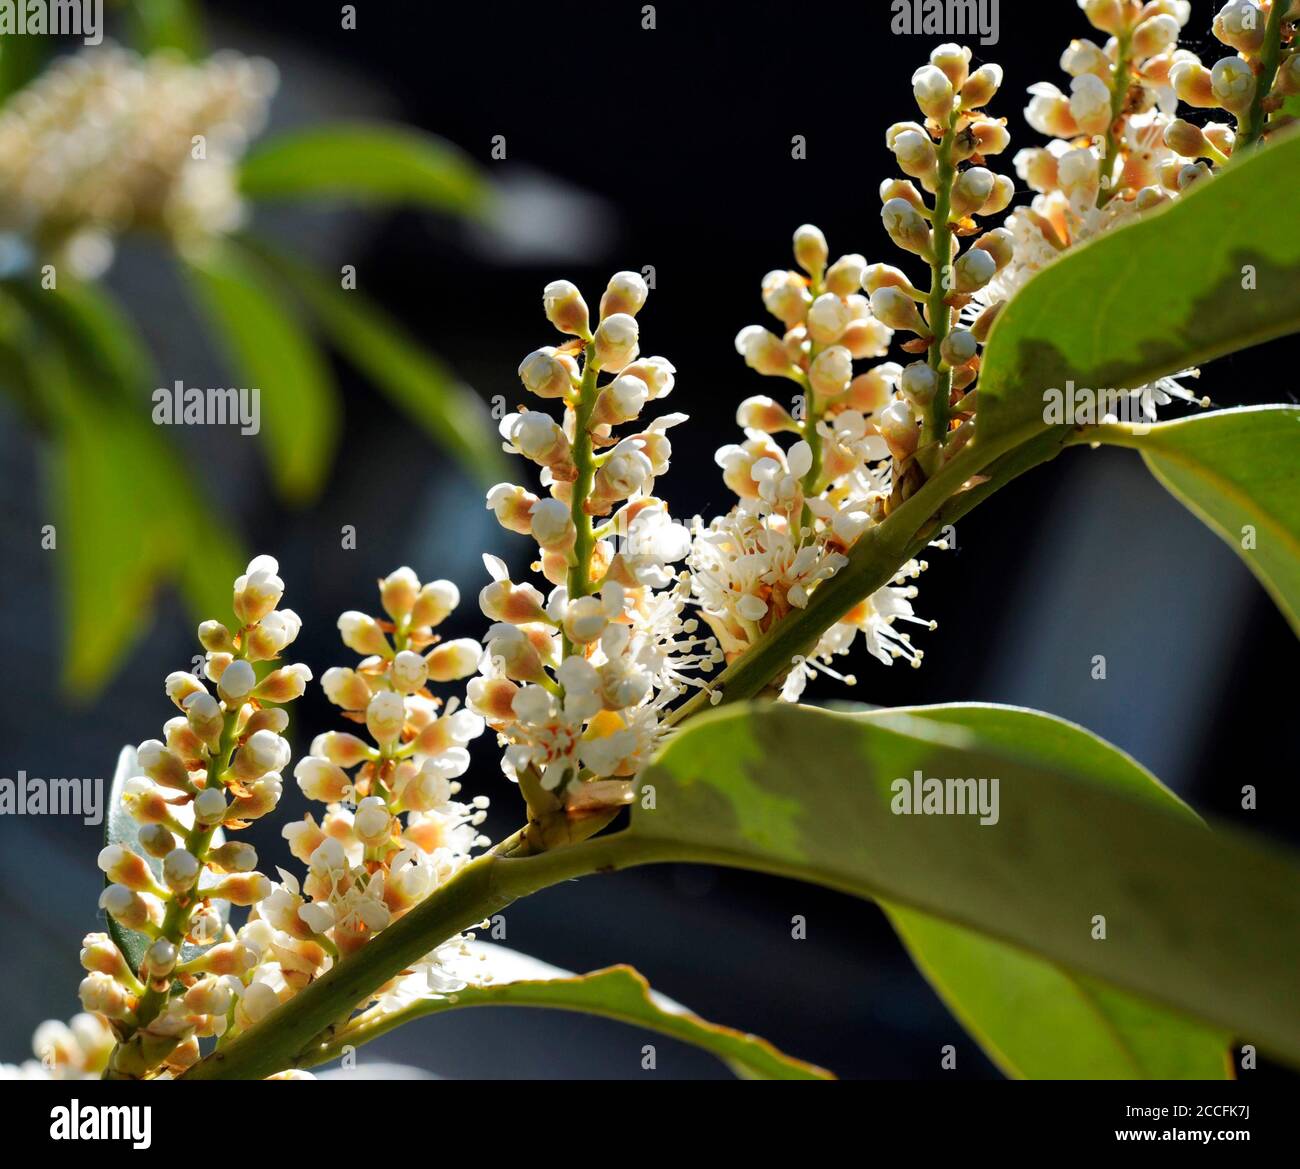 Blüten des Kirsche Lorbeer Prunus laurocerasus, auch Lorbeerkirsche, ein attraktiver Zierstrauch im Garten und Park Stockfoto